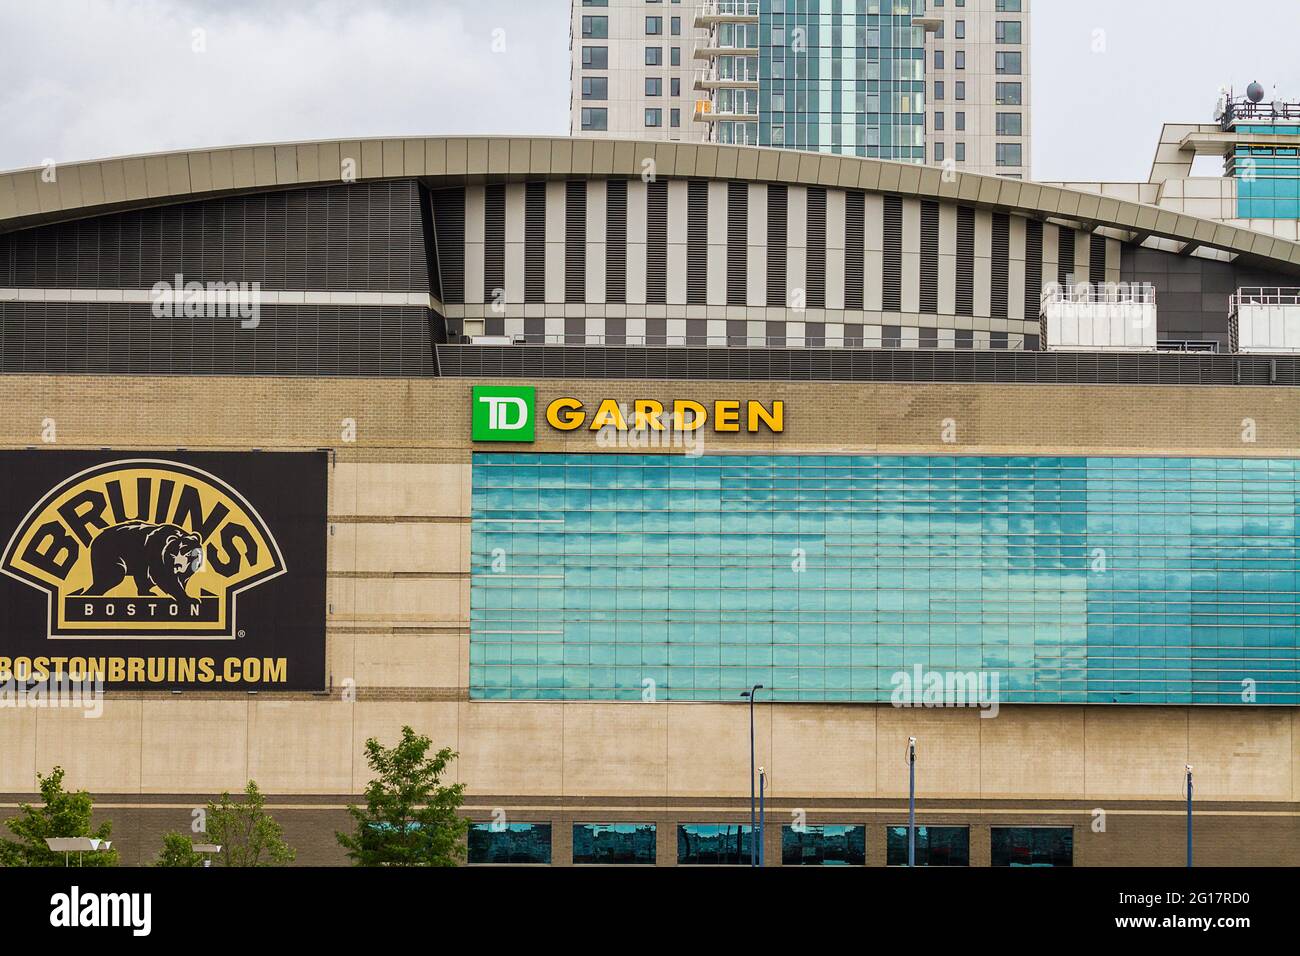 TD Garden building with Bruins Boston logo Stock Photo